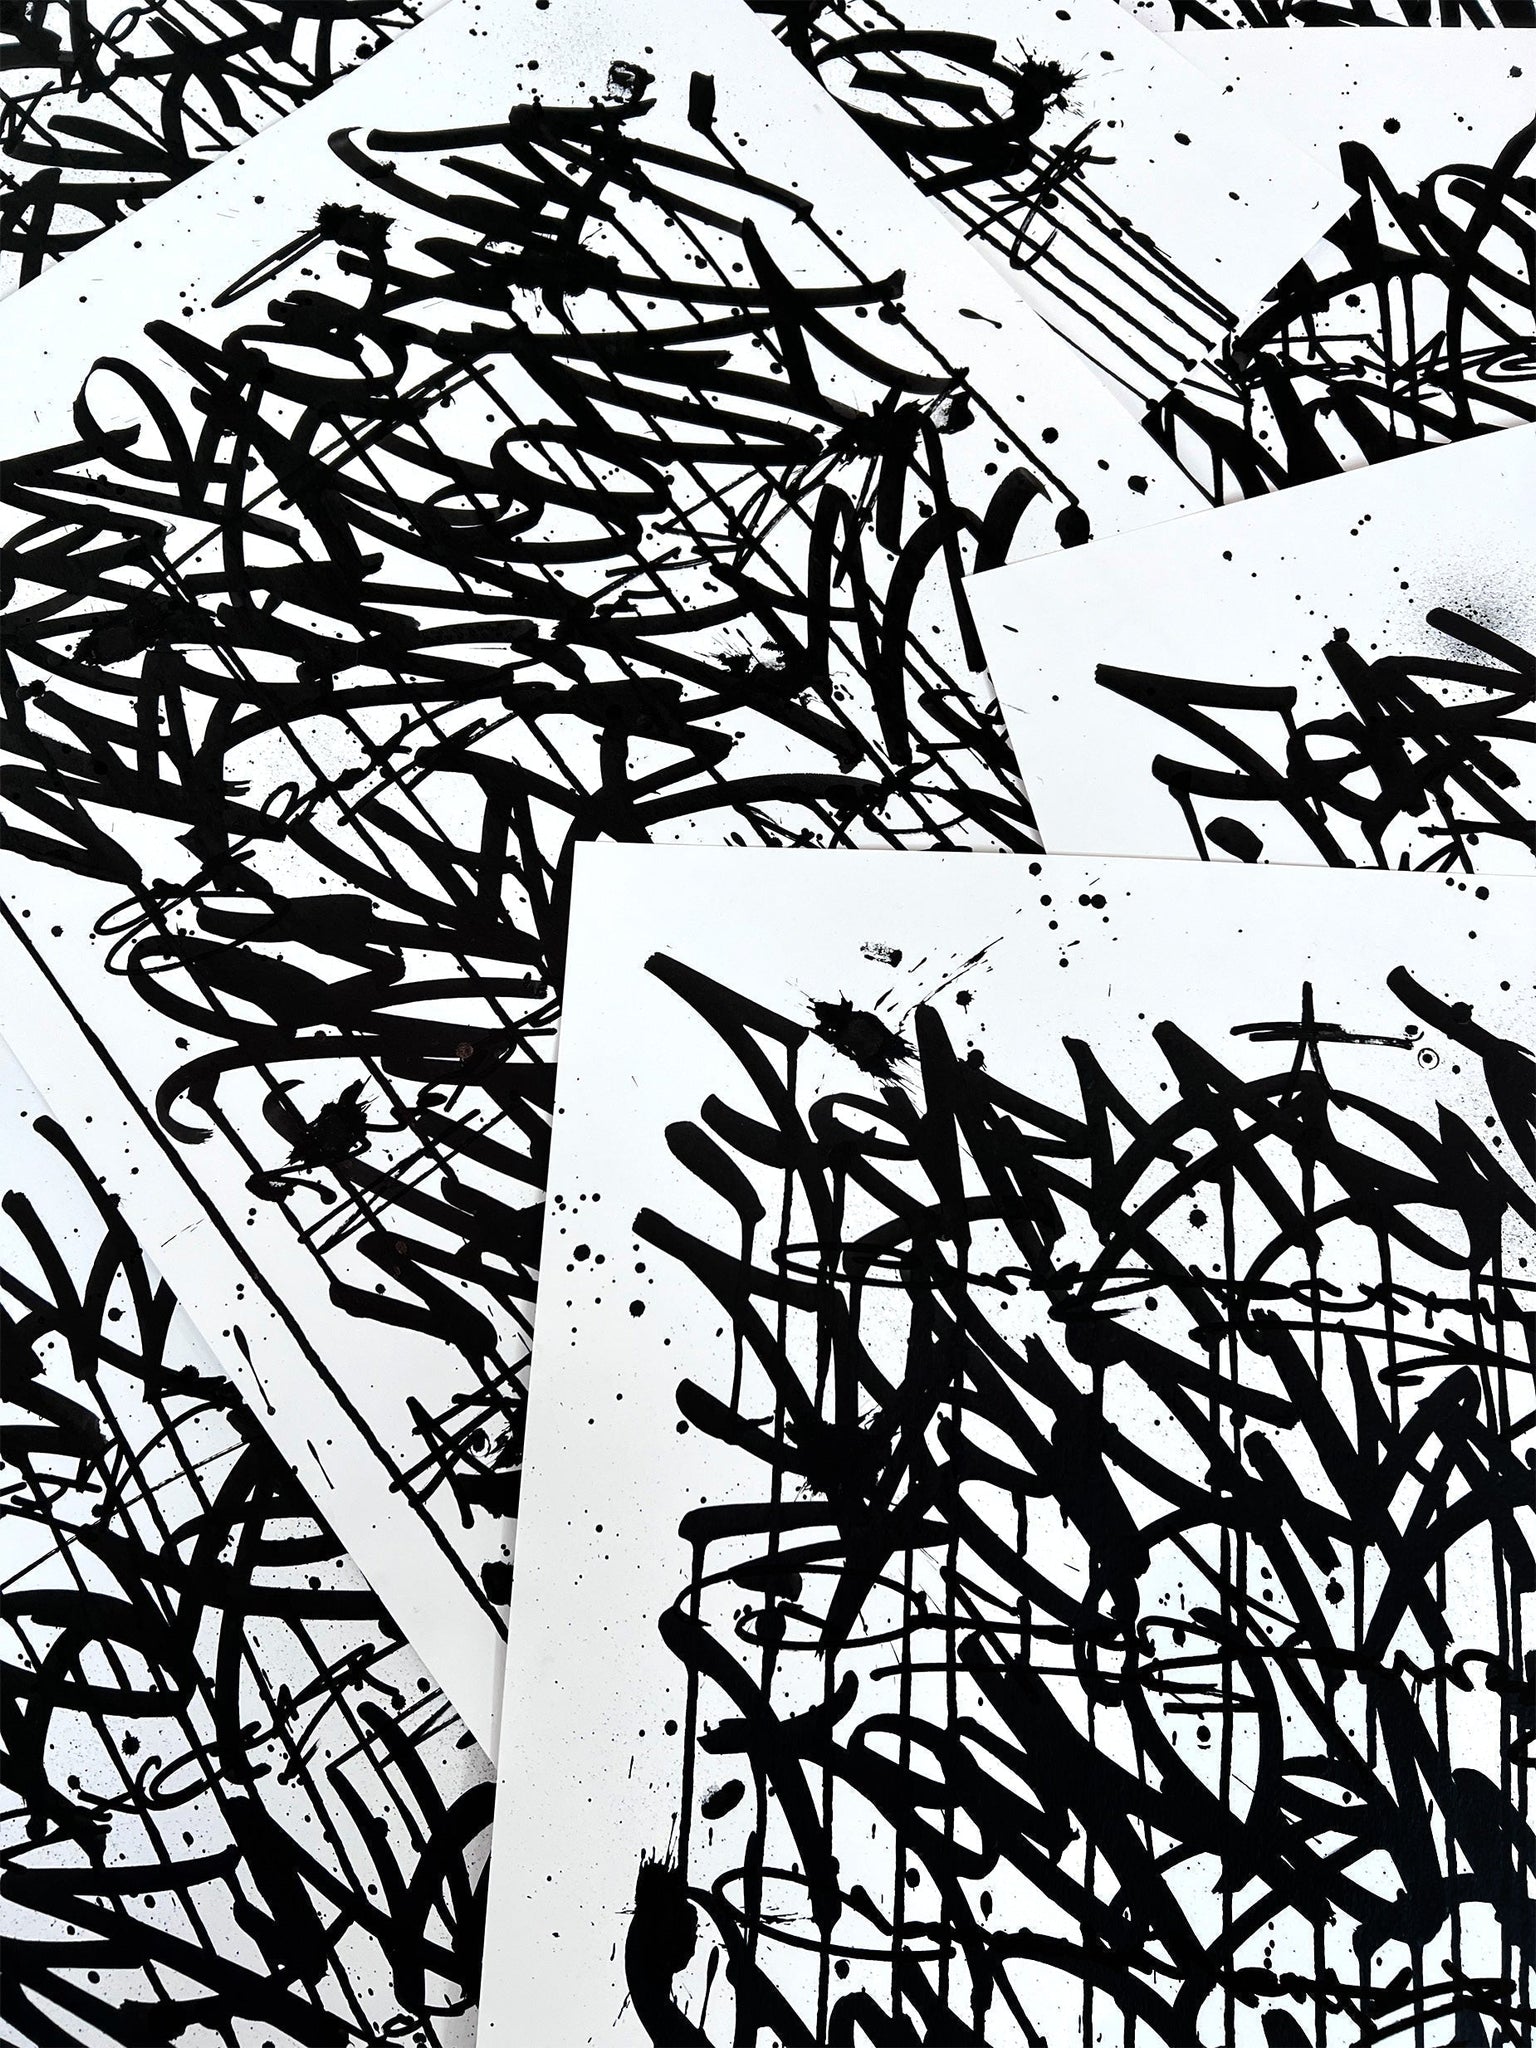 Fear Less Live More 08 - original on paper 50 x 70 cm